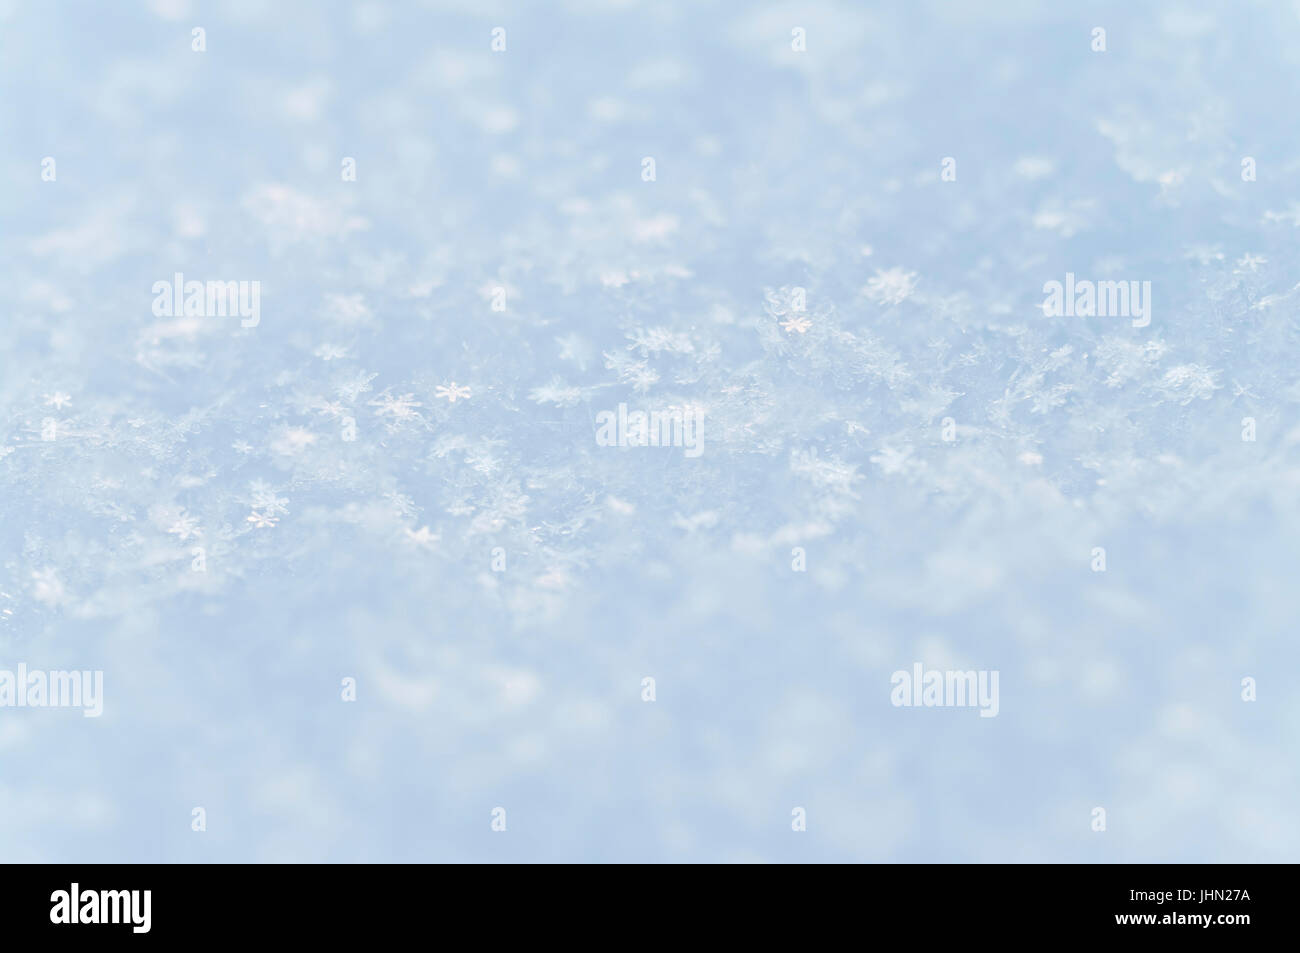 hellblauen Hintergrund Makro Bild der oberen Schicht Schnee mit separates Schneeflocken sichtbar Stockfoto